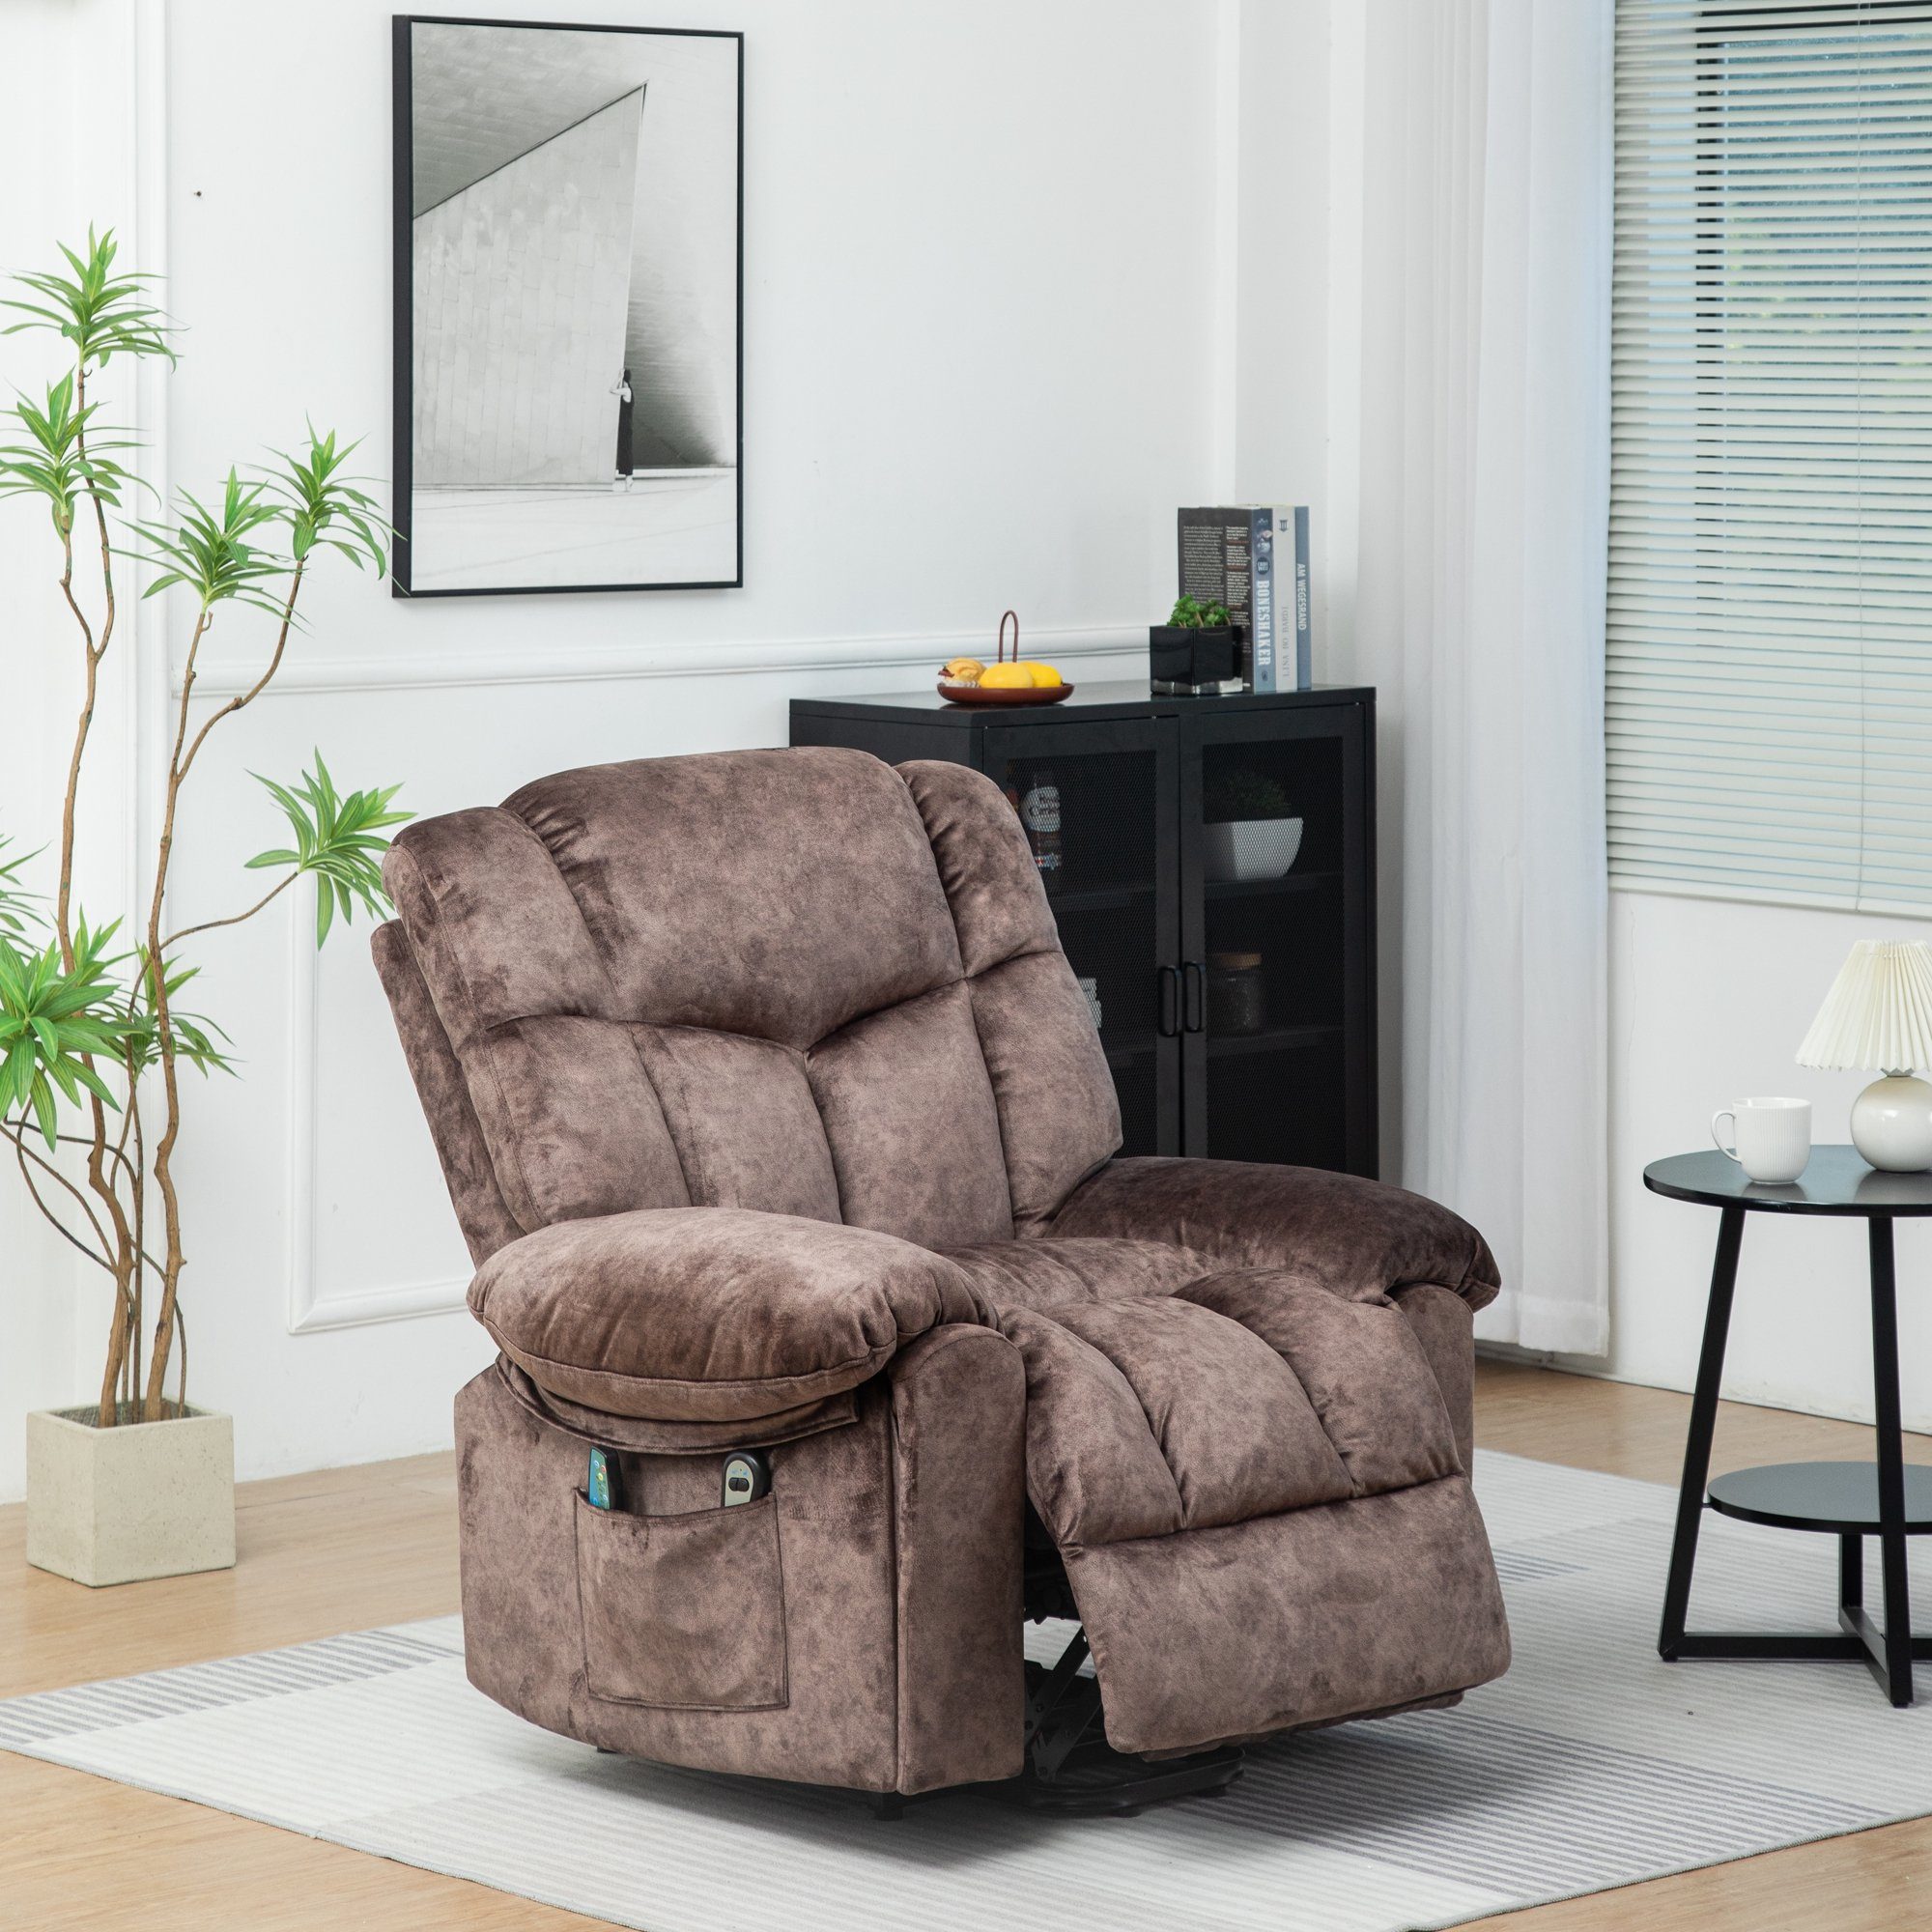 Merax TV-Sessel Elektrisch Relaxsessel mit Aufstehhilfe und Liegefunktion, Fernsehsessel mit relaxfunktion, Wärme und Vibraiton, Massagesessel Braun